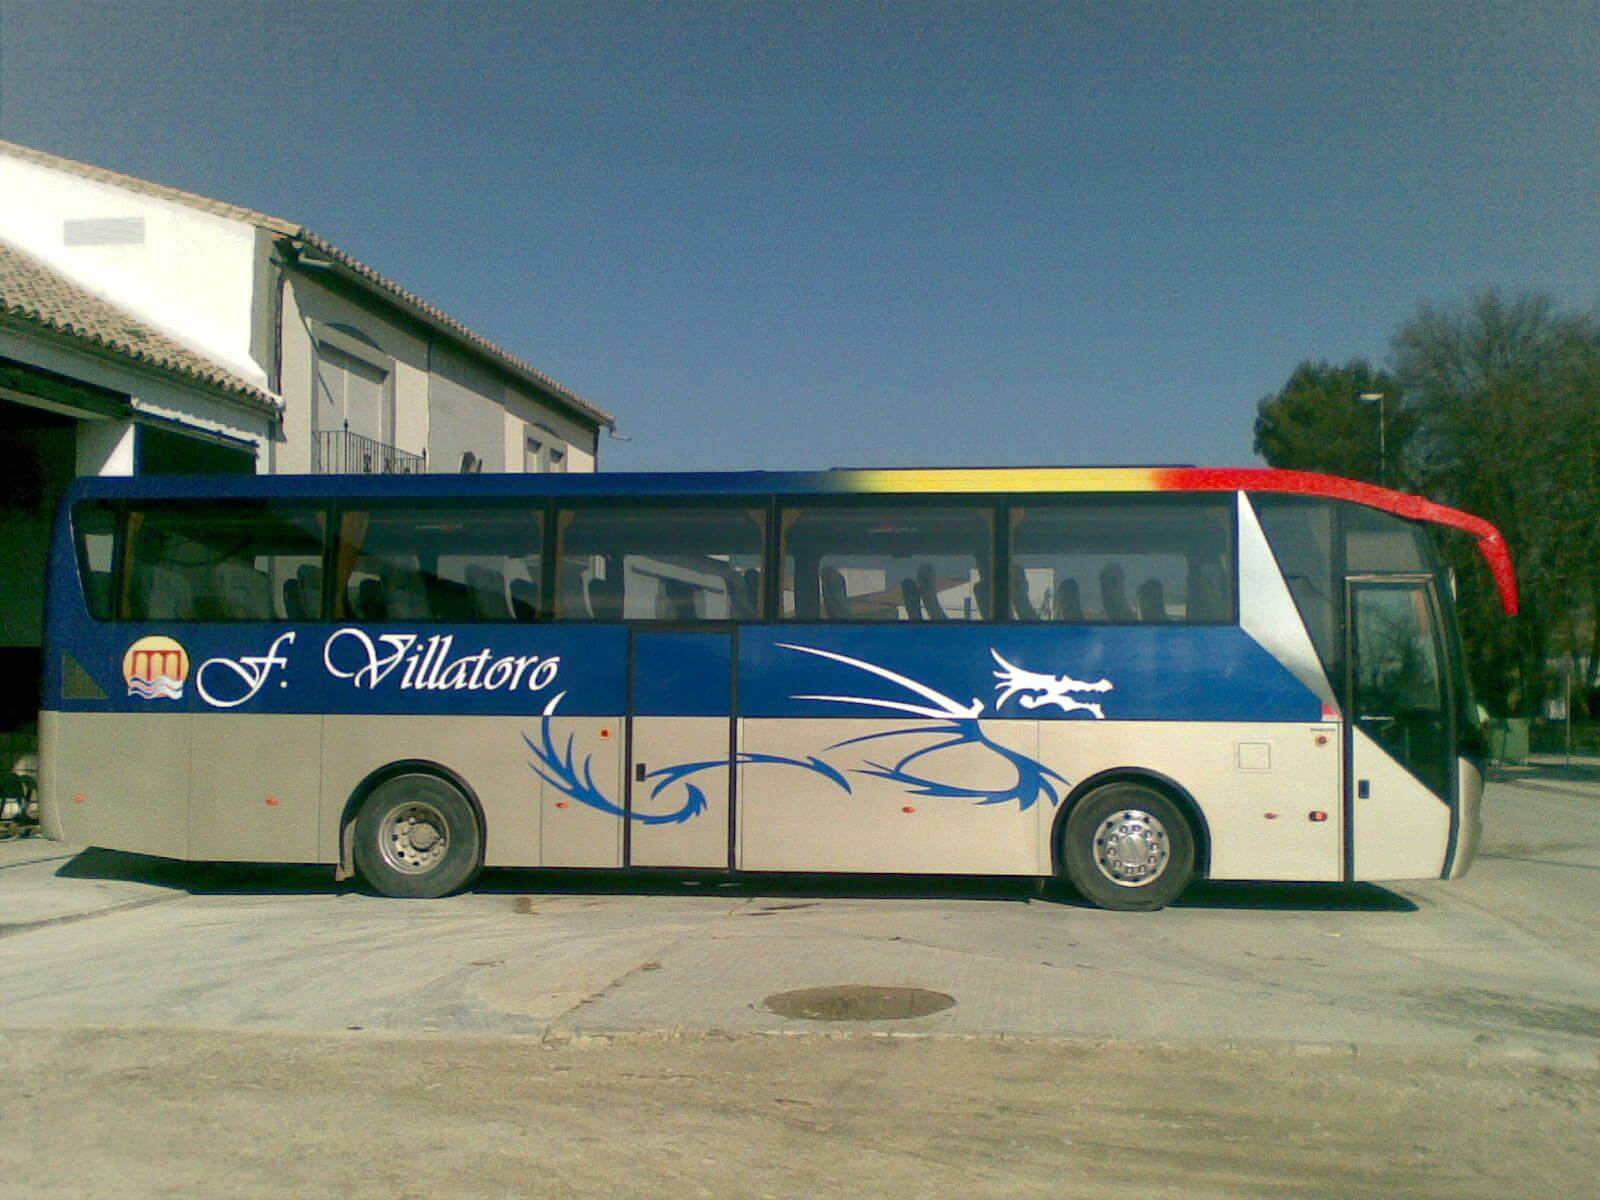 Huur een Standaard Bus -Touringcar (Mercedes Farebus Autocar ejecutivo con mucho espacio para las piernas. 2010) met 55 stoelen van Autocares Fernández Villatoro S.L. uit Castro del Río - Córdoba 